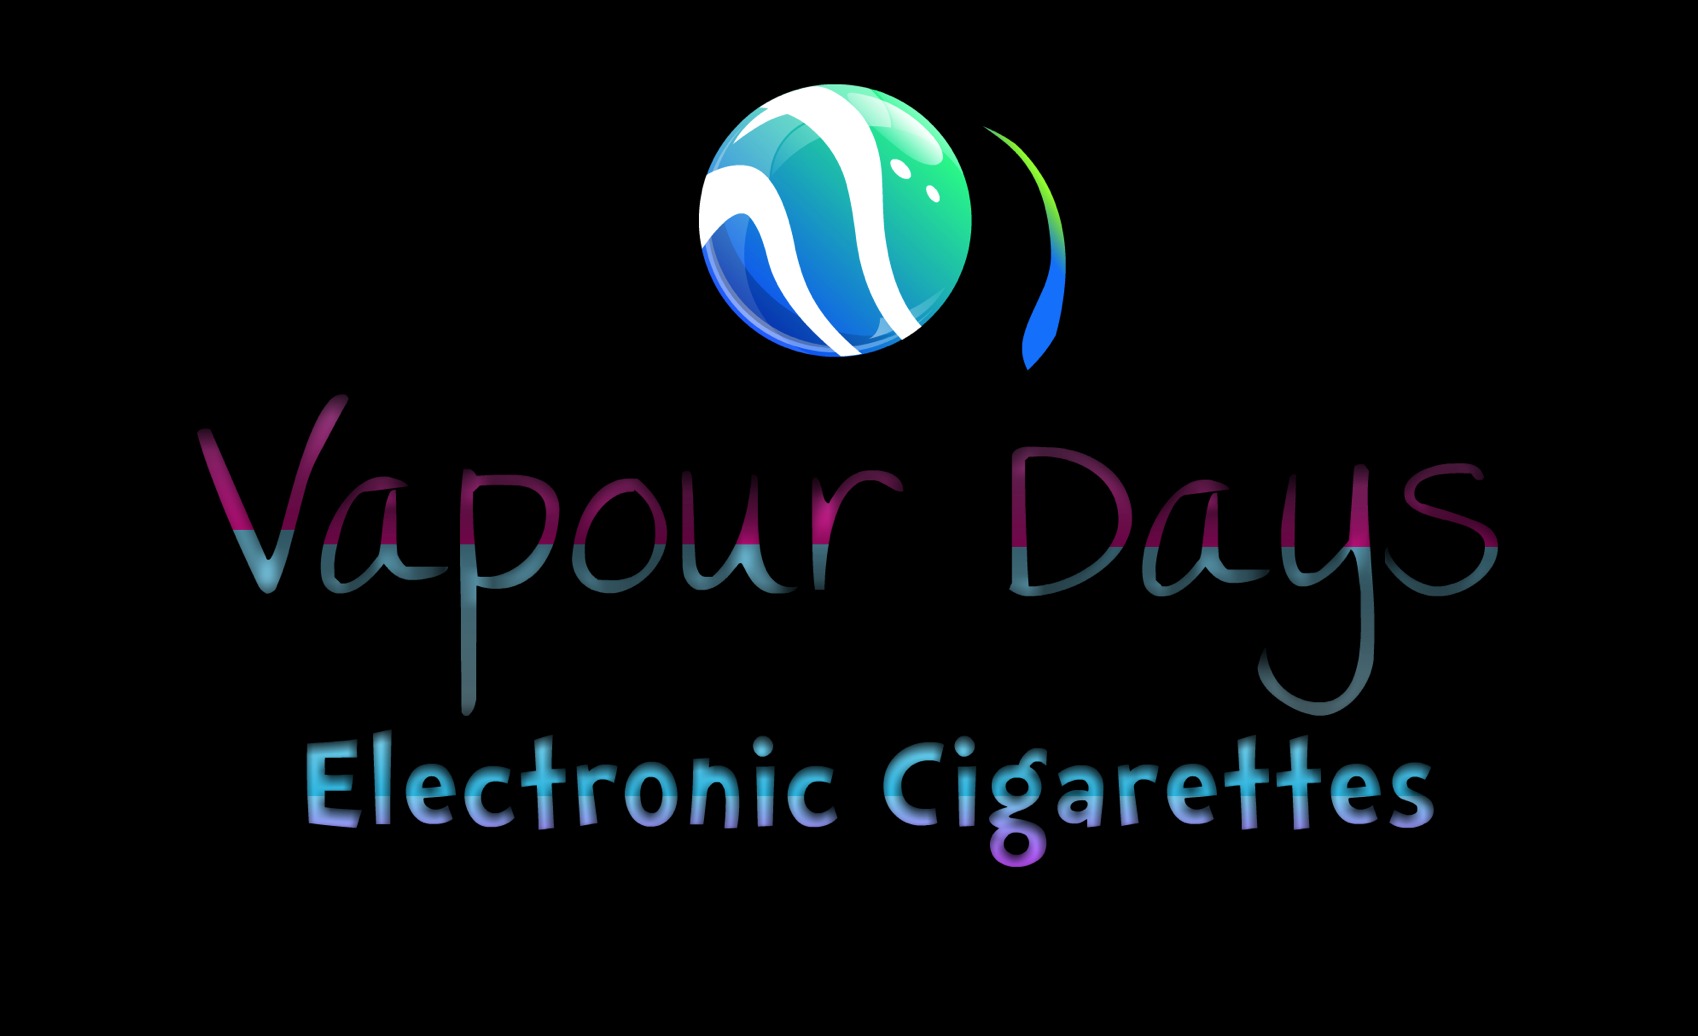 Bristol Electronic Cigarette Shop - Vapour Days